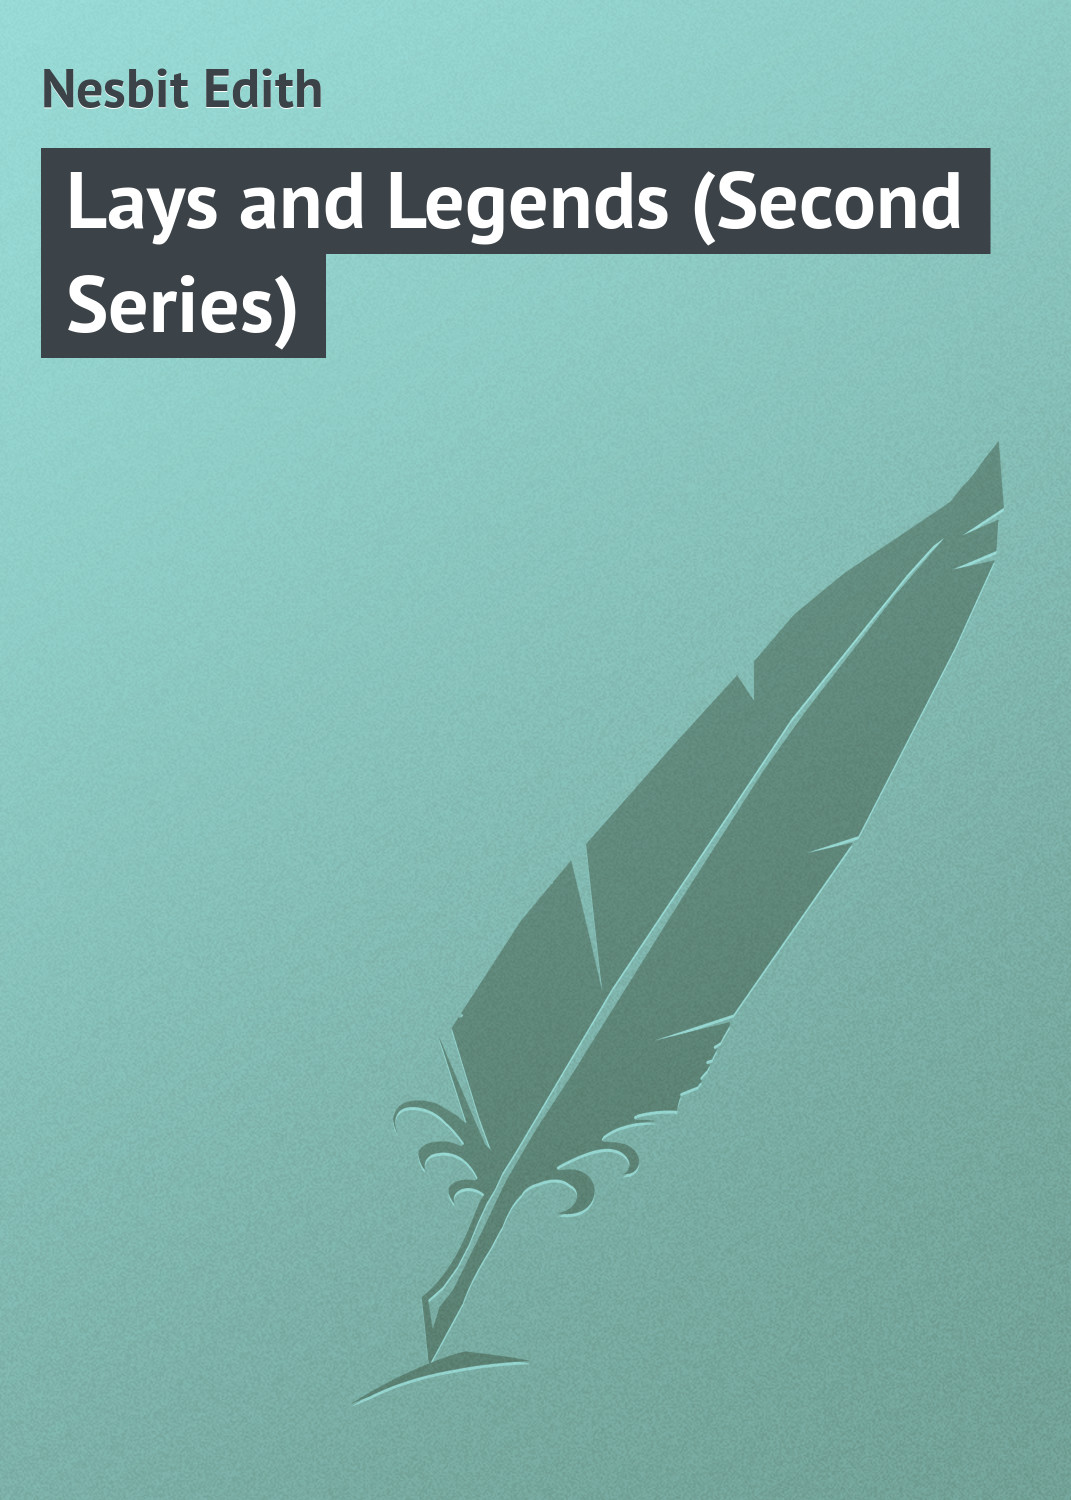 Книга Lays and Legends (Second Series) из серии , созданная Edith Nesbit, может относится к жанру Поэзия, Зарубежная классика, Зарубежные стихи. Стоимость электронной книги Lays and Legends (Second Series) с идентификатором 23146699 составляет 5.99 руб.